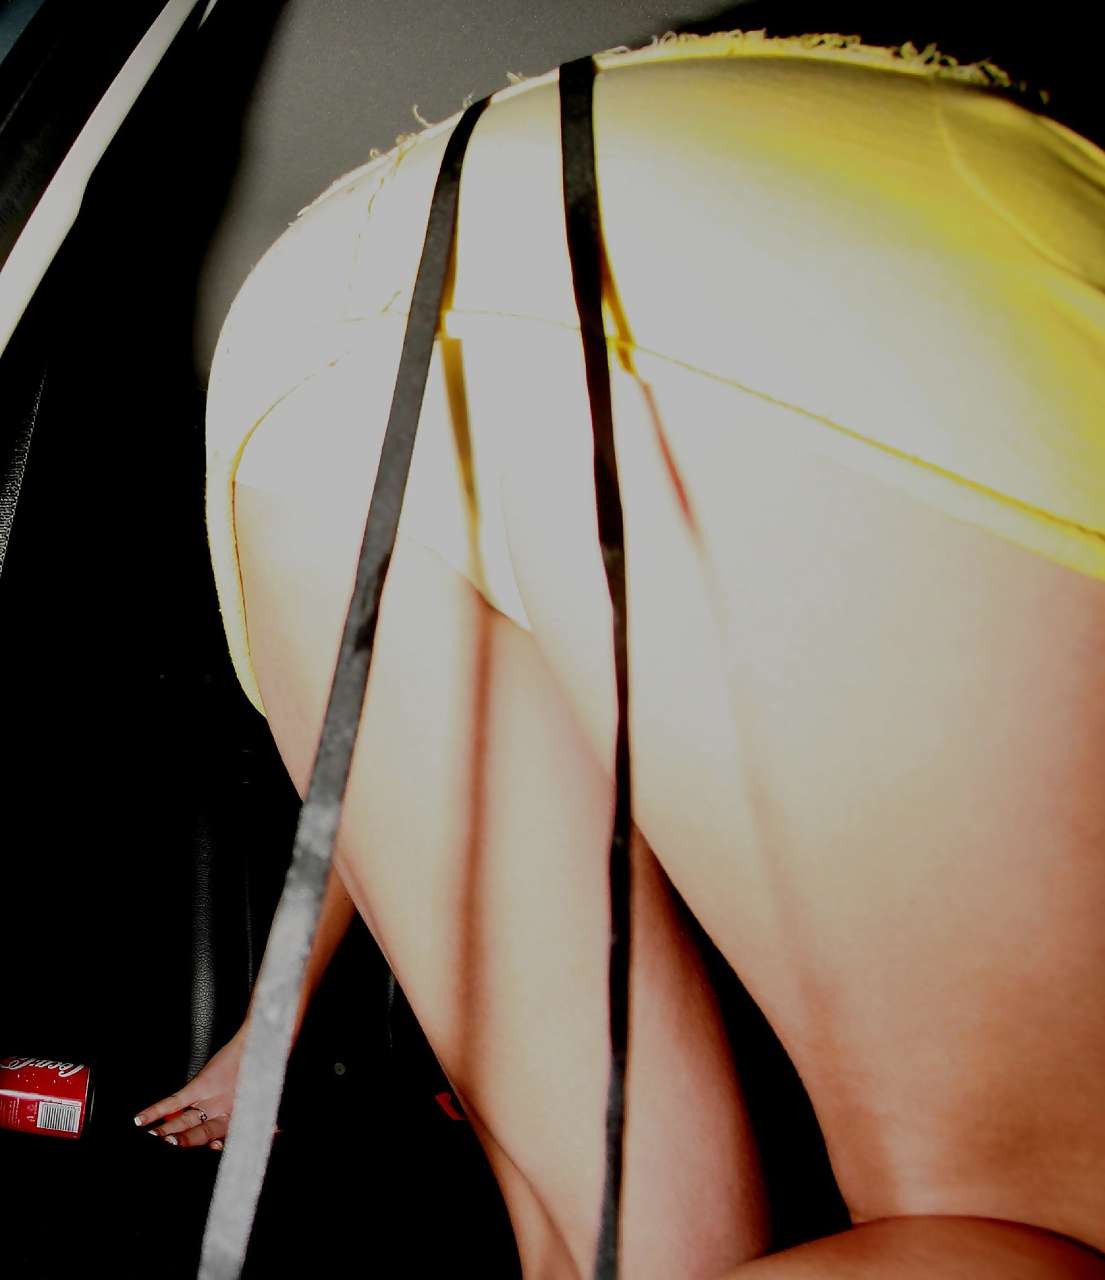 Gemma atkinson enseñando el culo mientras sale del coche con la falda levantada fotos de paparazzi
 #75300248